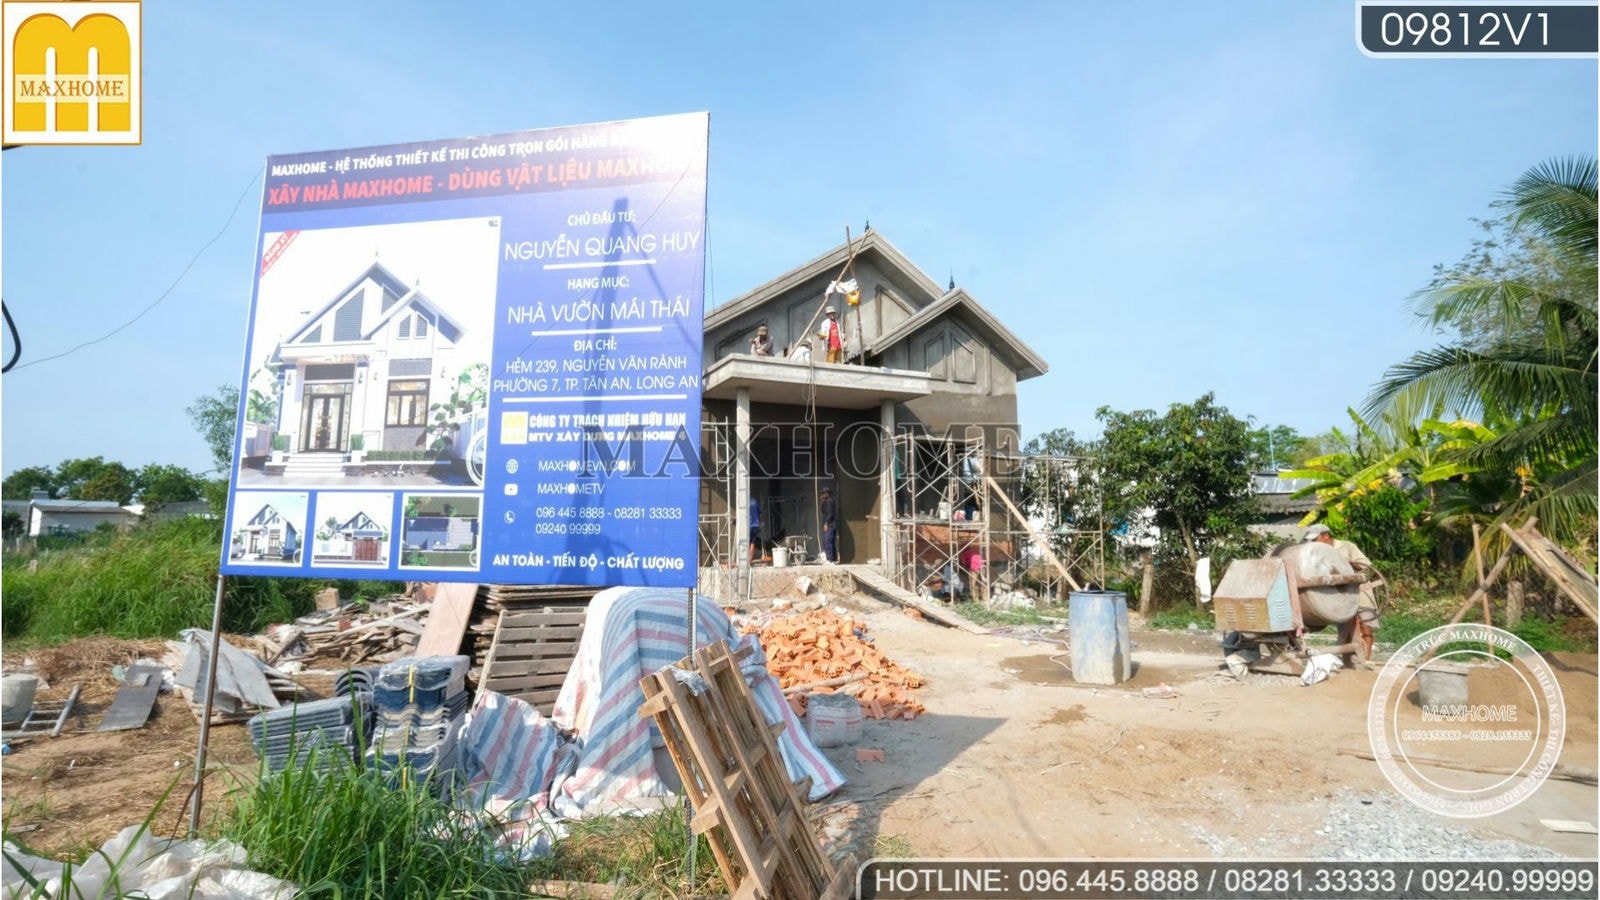 Ghé thăm tiến độ ngôi nhà vườn mái Thái cực đẹp tại Long An